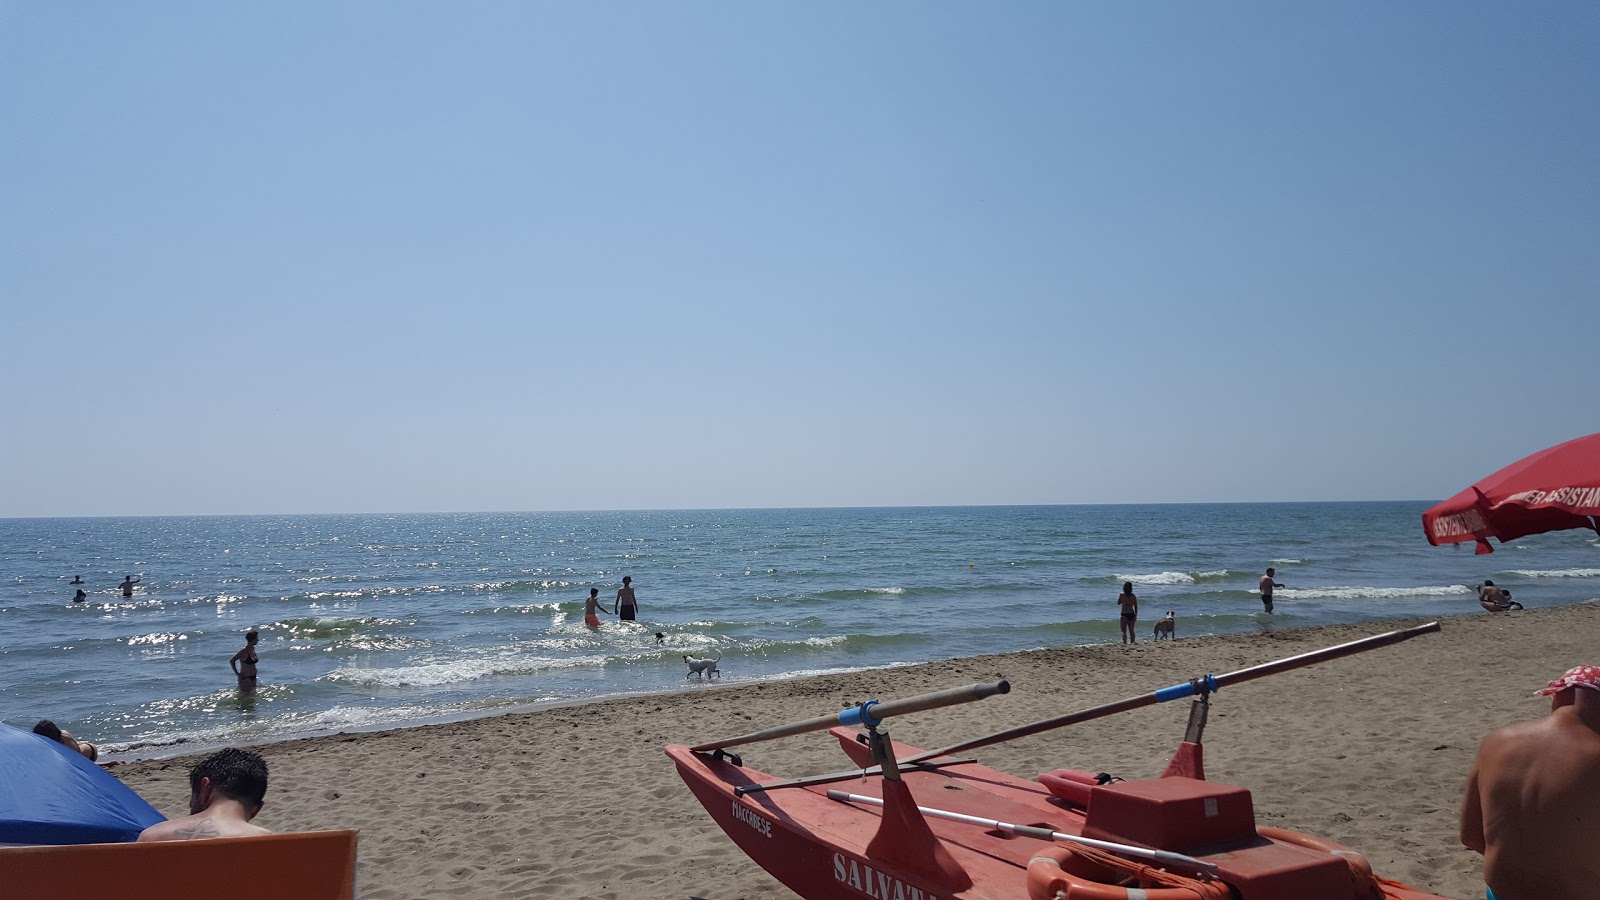 Bocca di Leone beach'in fotoğrafı - Çocuklu aile gezginleri için önerilir